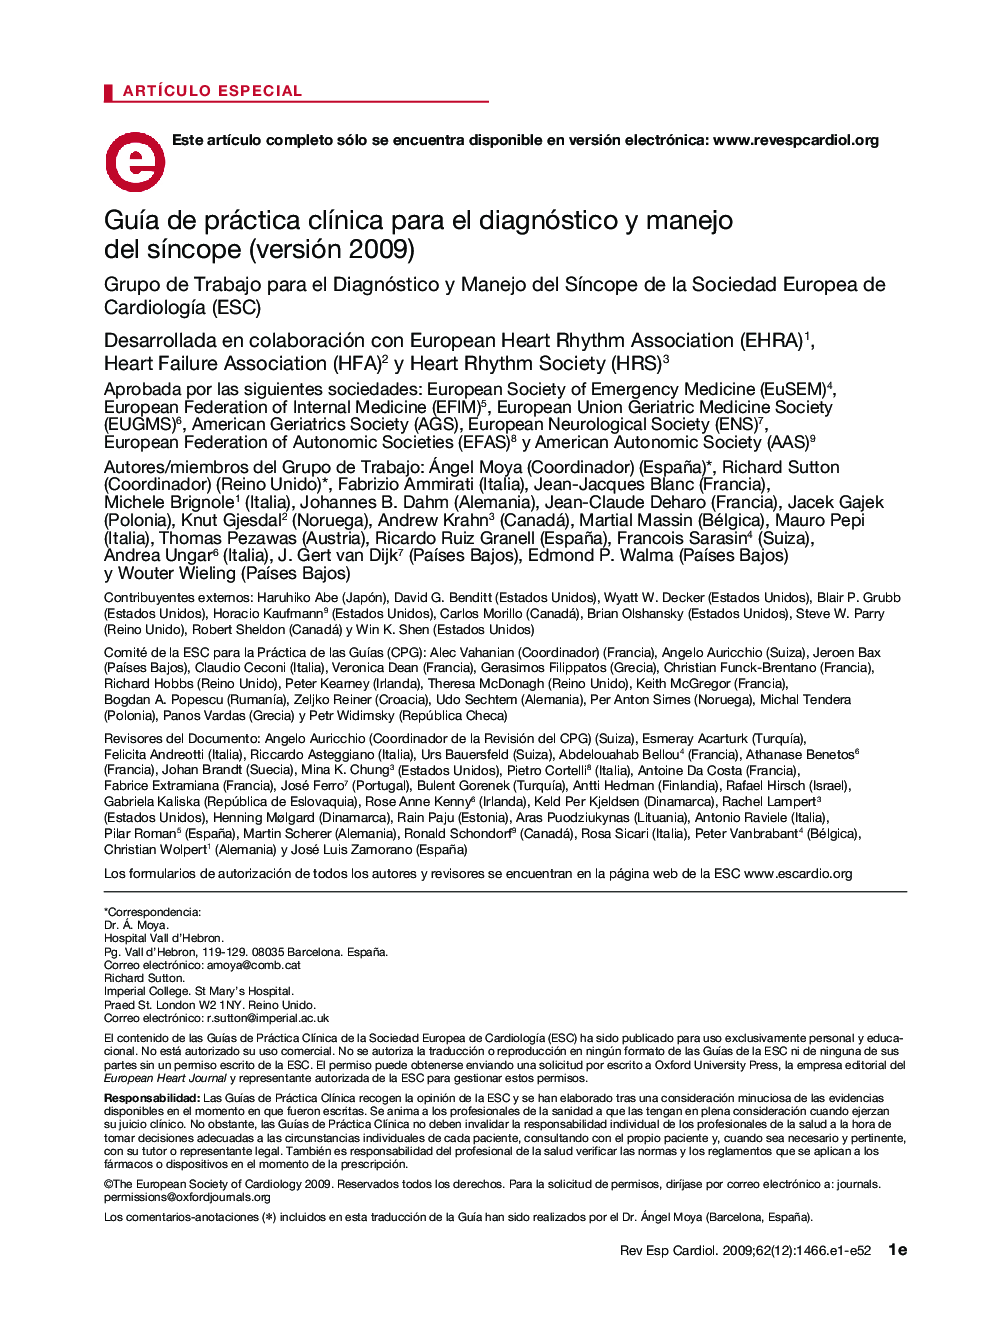 GuÃ­a de práctica clÃ­nica para el diagnóstico y manejo del sÃ­ncope (versión 2009)1